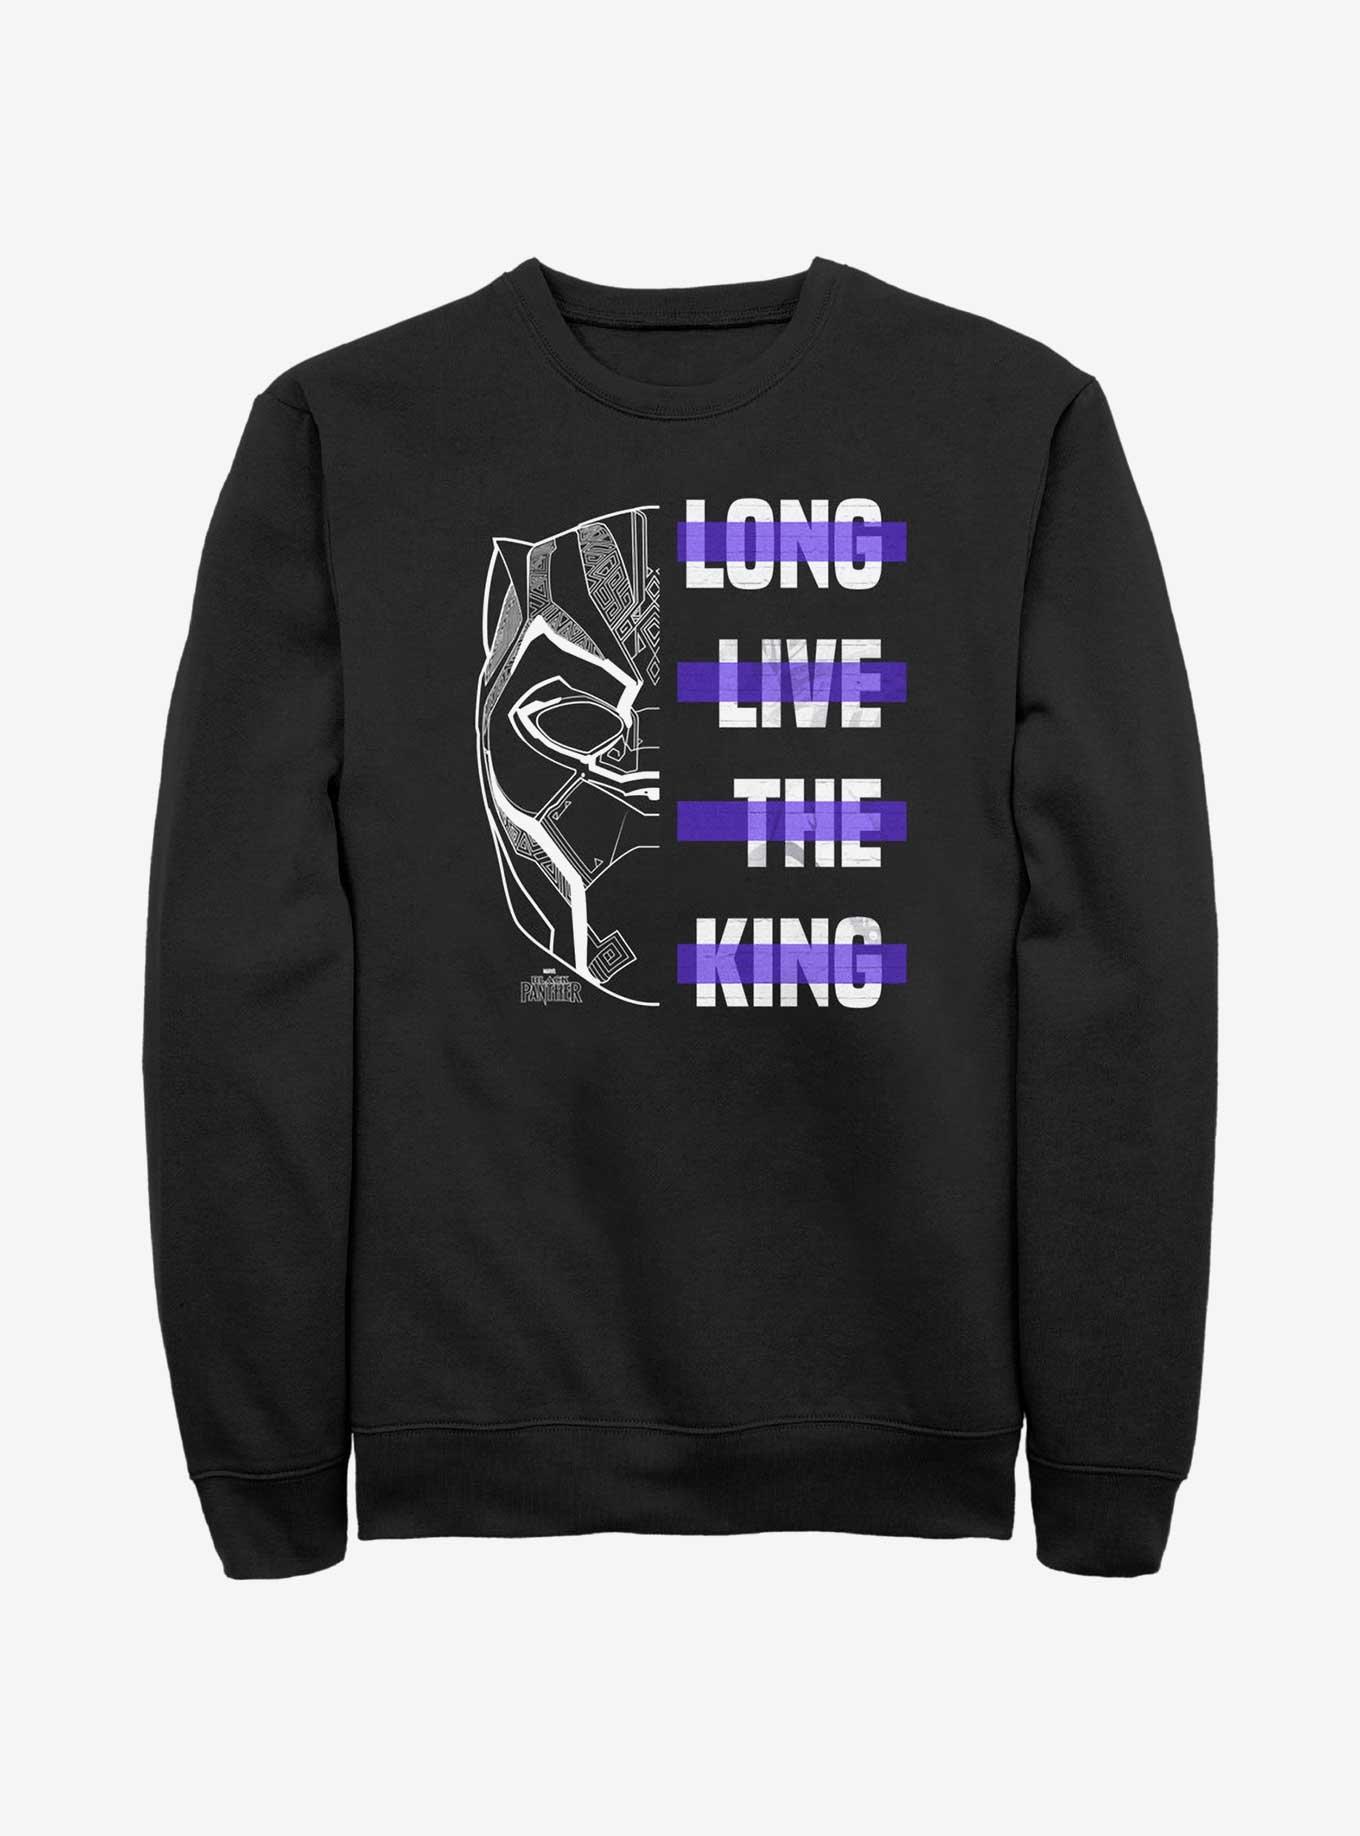 Marvel Black Panther Long Live The King Sweatshirt, BLACK, hi-res